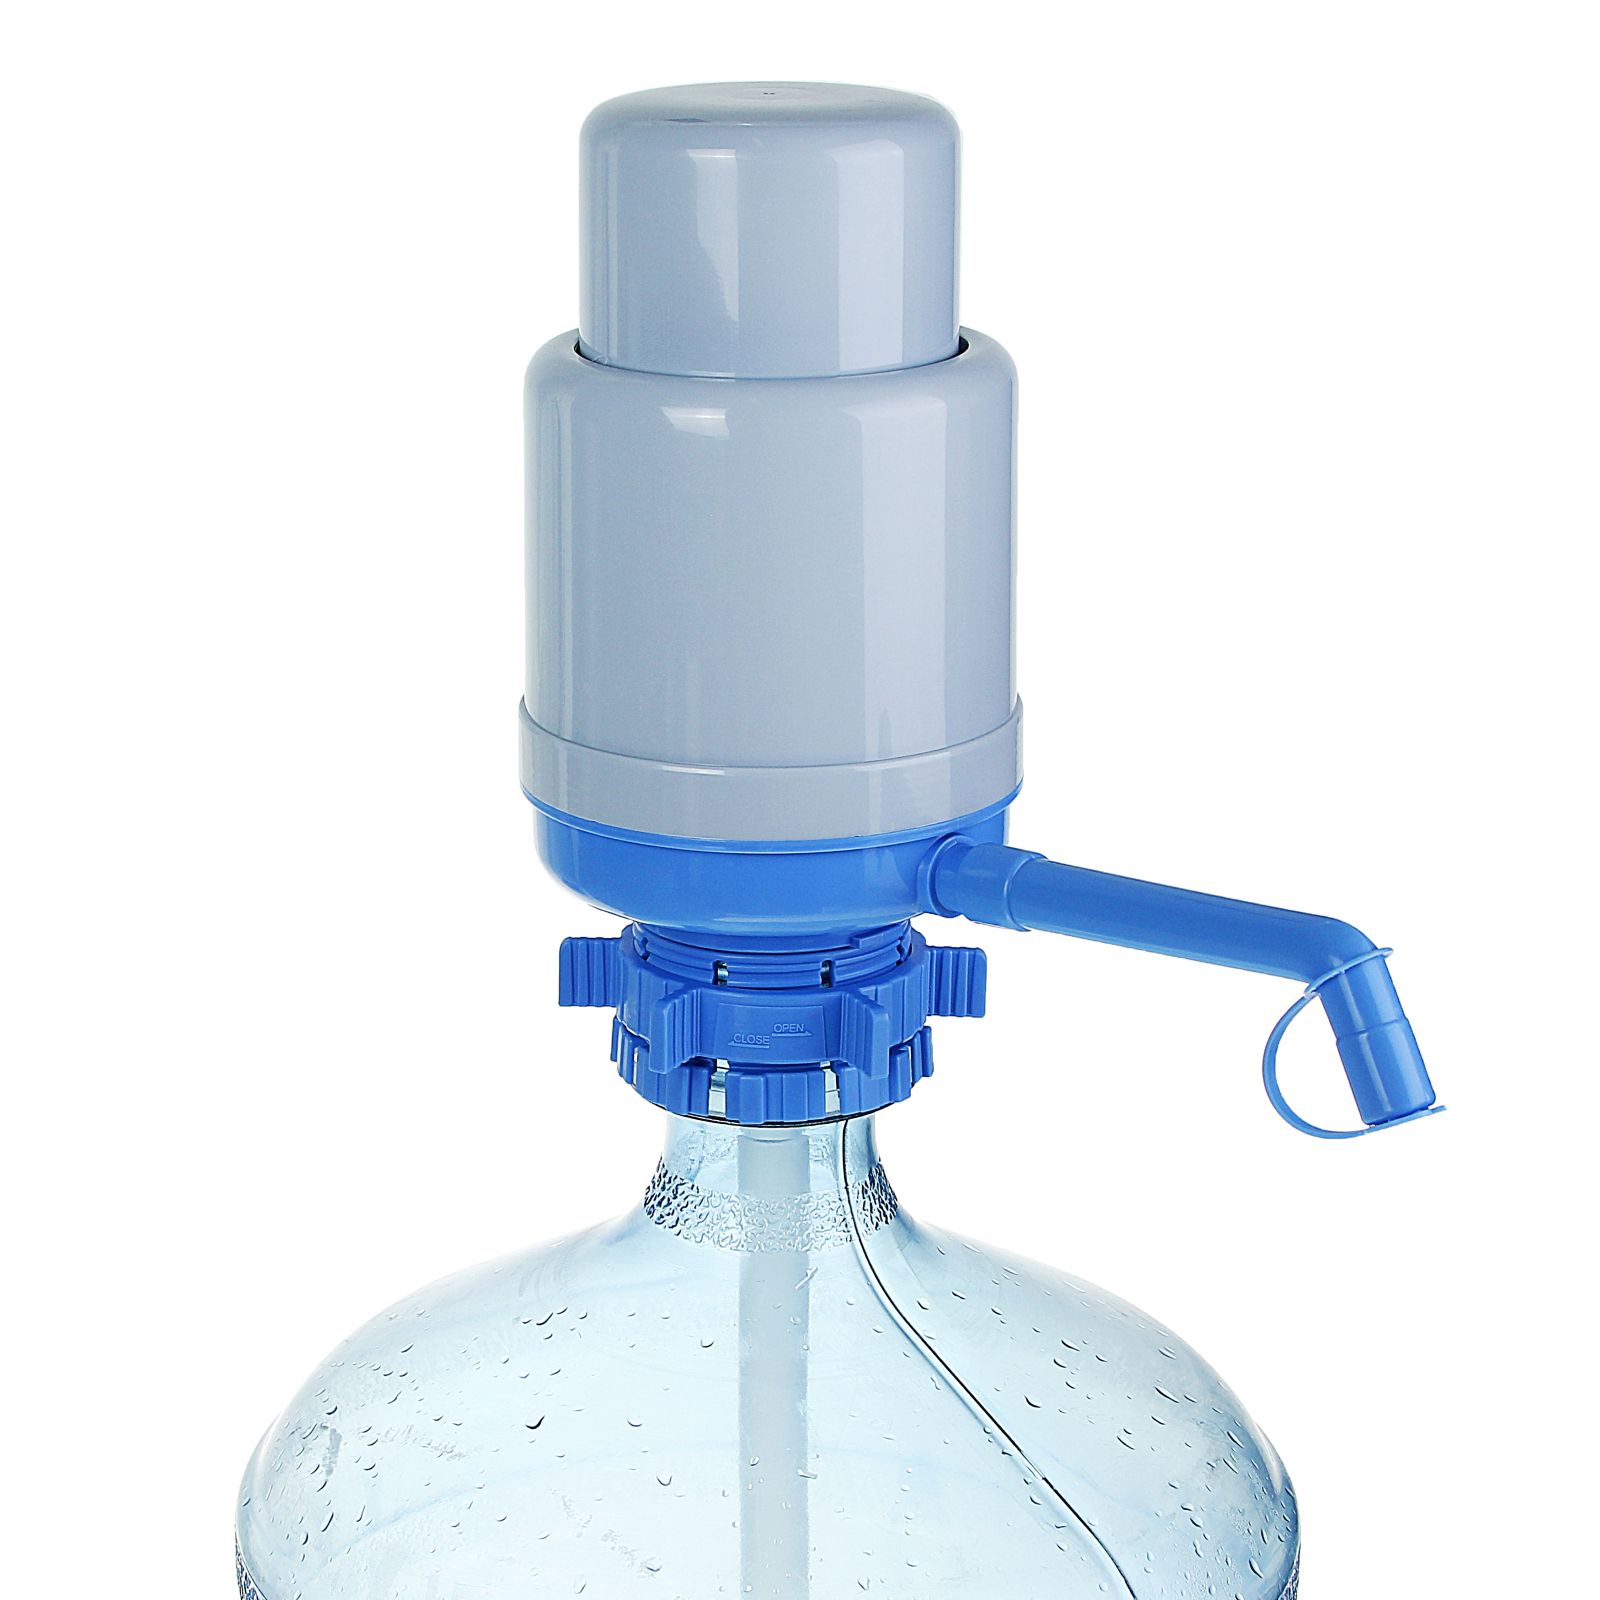 Помпа Sima-Land для воды LESOTO Standart механическая под бутыль от 11 до 19 л голубая - фото 4